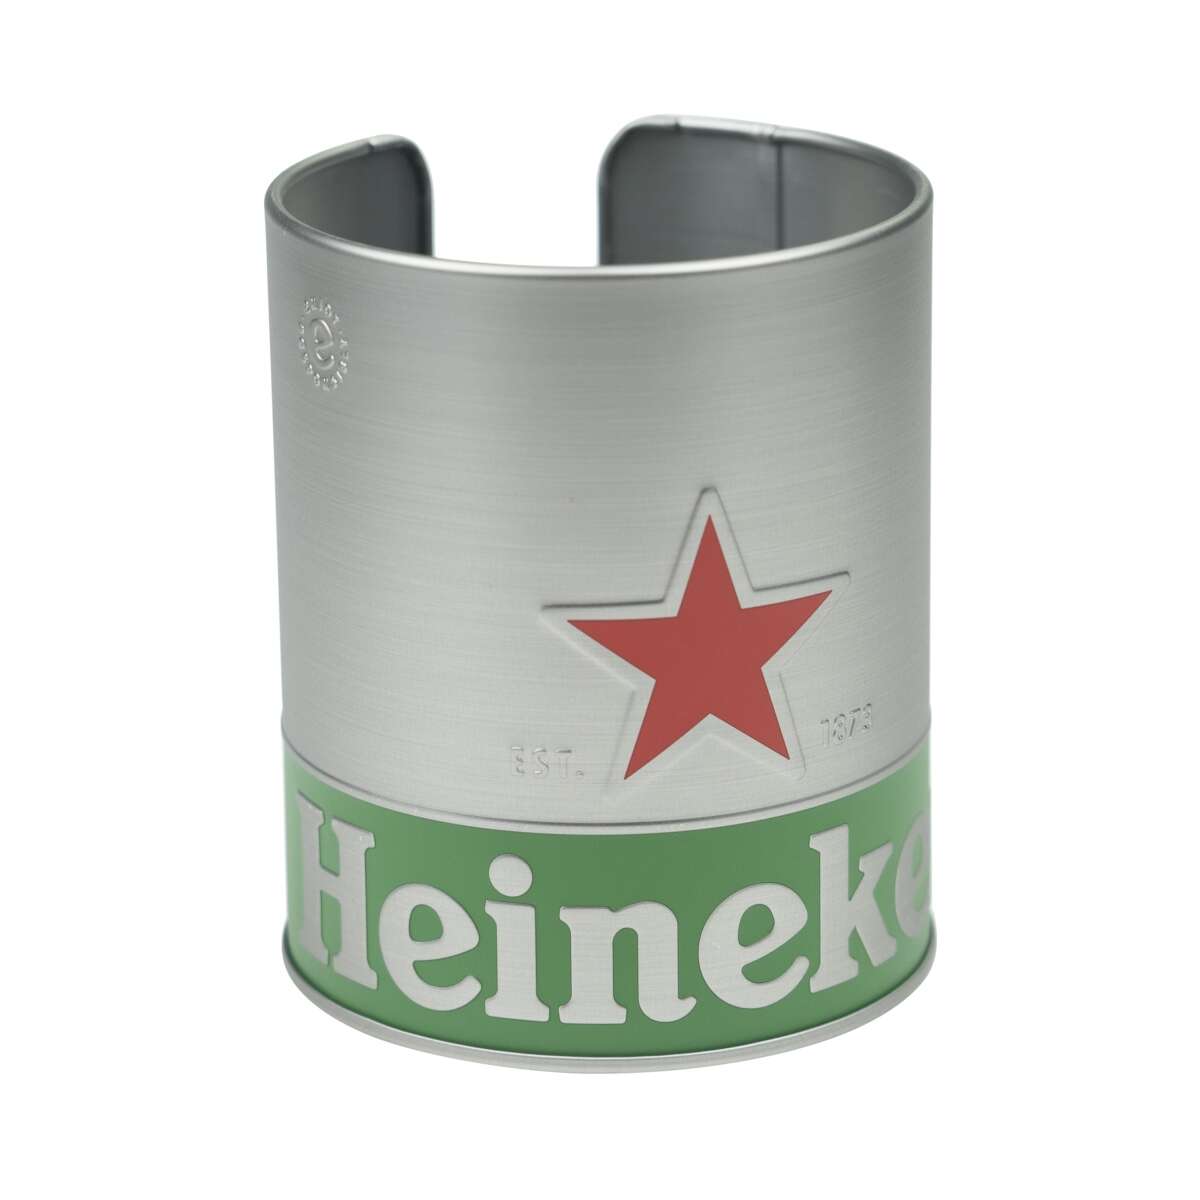 Heineken Bier Deckel Halter Untersetzer Coaster Abtropf